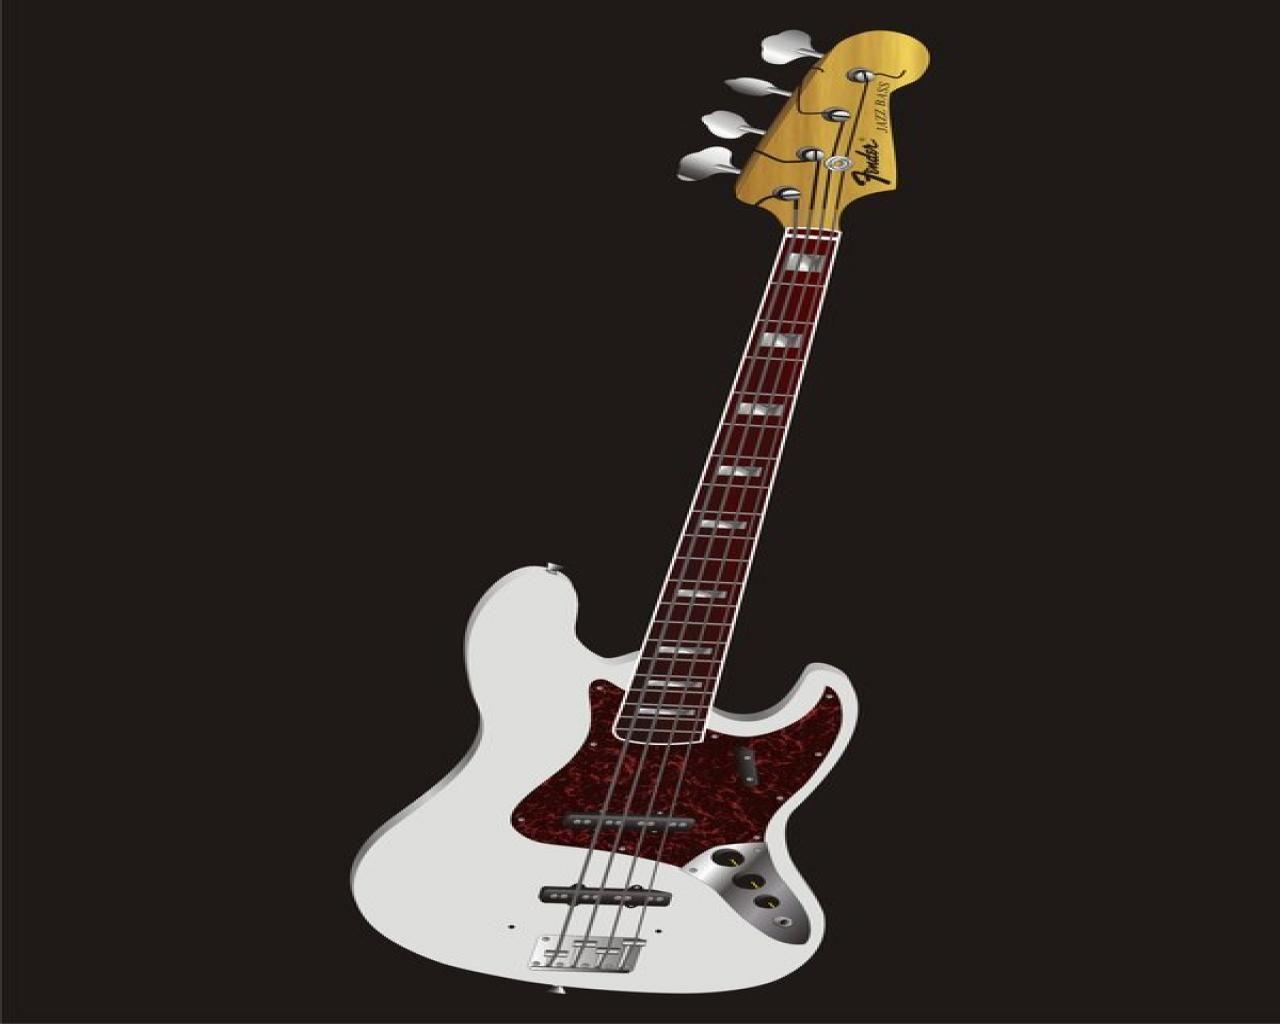 NXK98LP Fender Jazz Bass Wallpaper 600x848 px